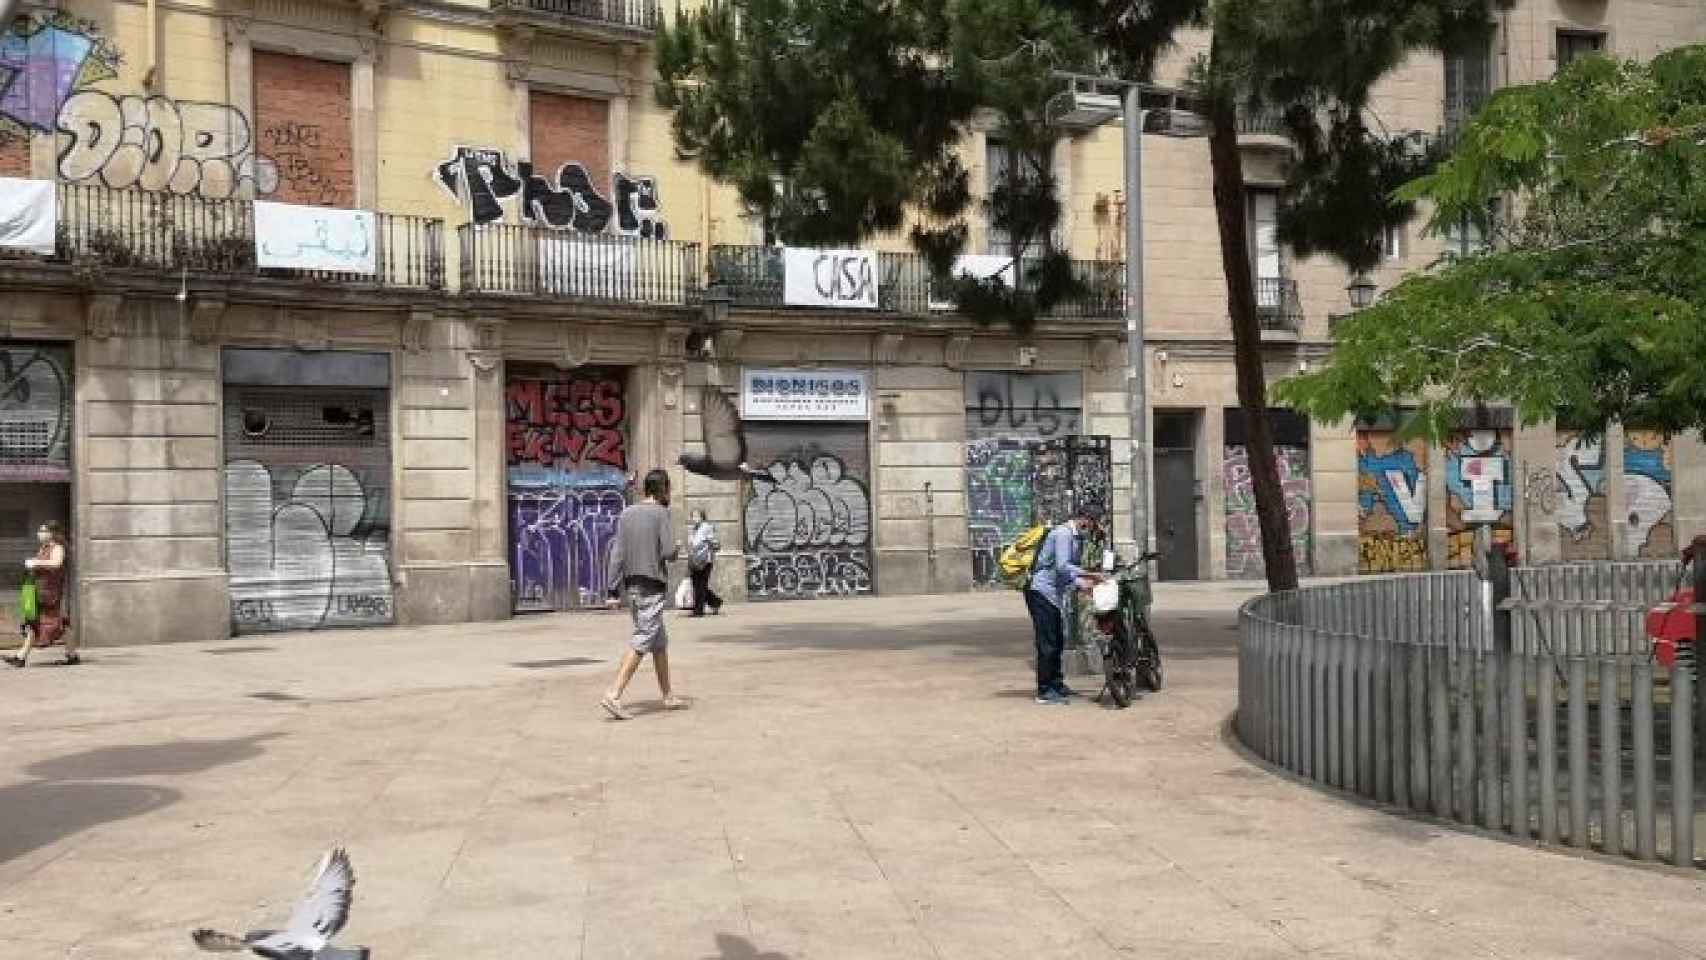 Plaza George Orwell de Barcelona, en una imagen tomada el 25 de mayo / METRÓPOLI ABIERTA